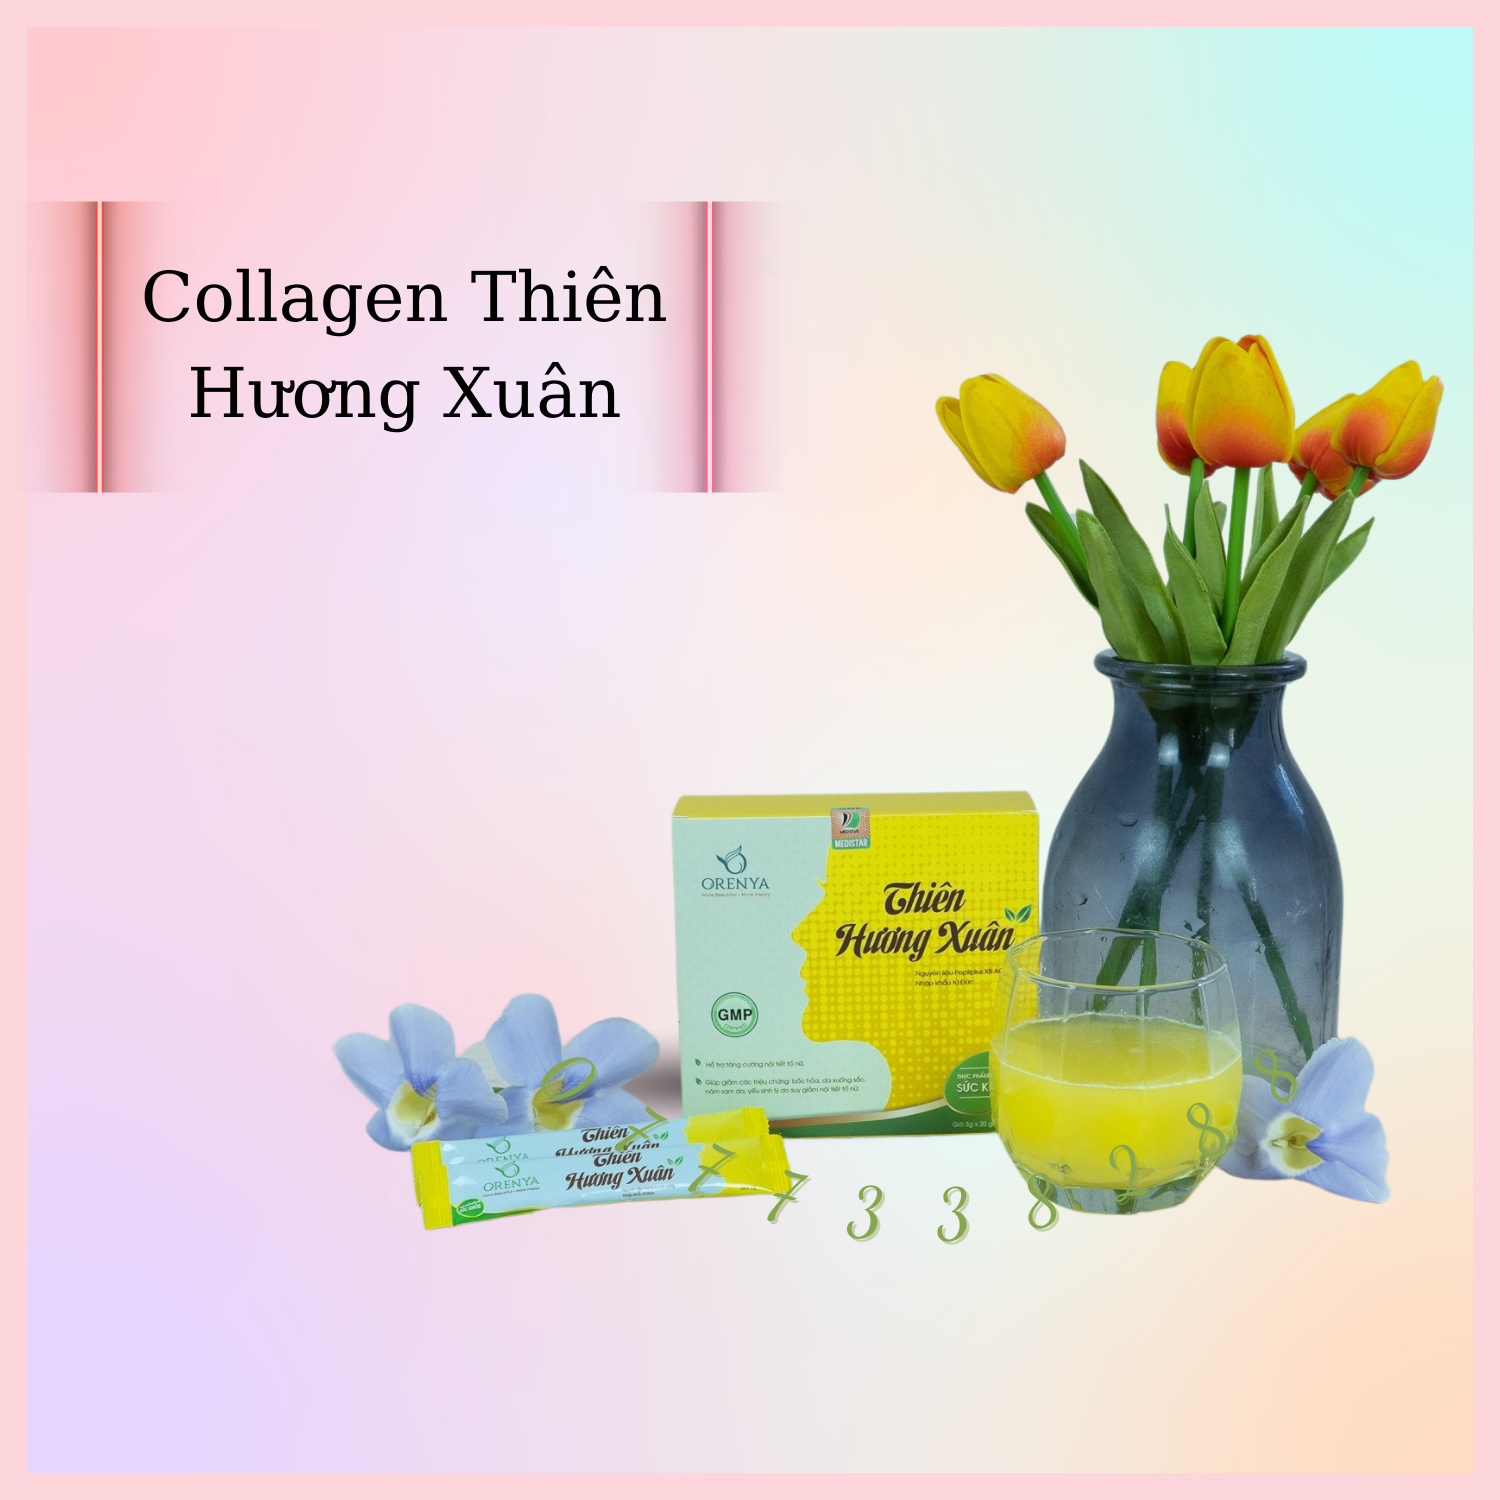 Collagen Thiên Hương Xuân gói lẻ 3g thumbnail